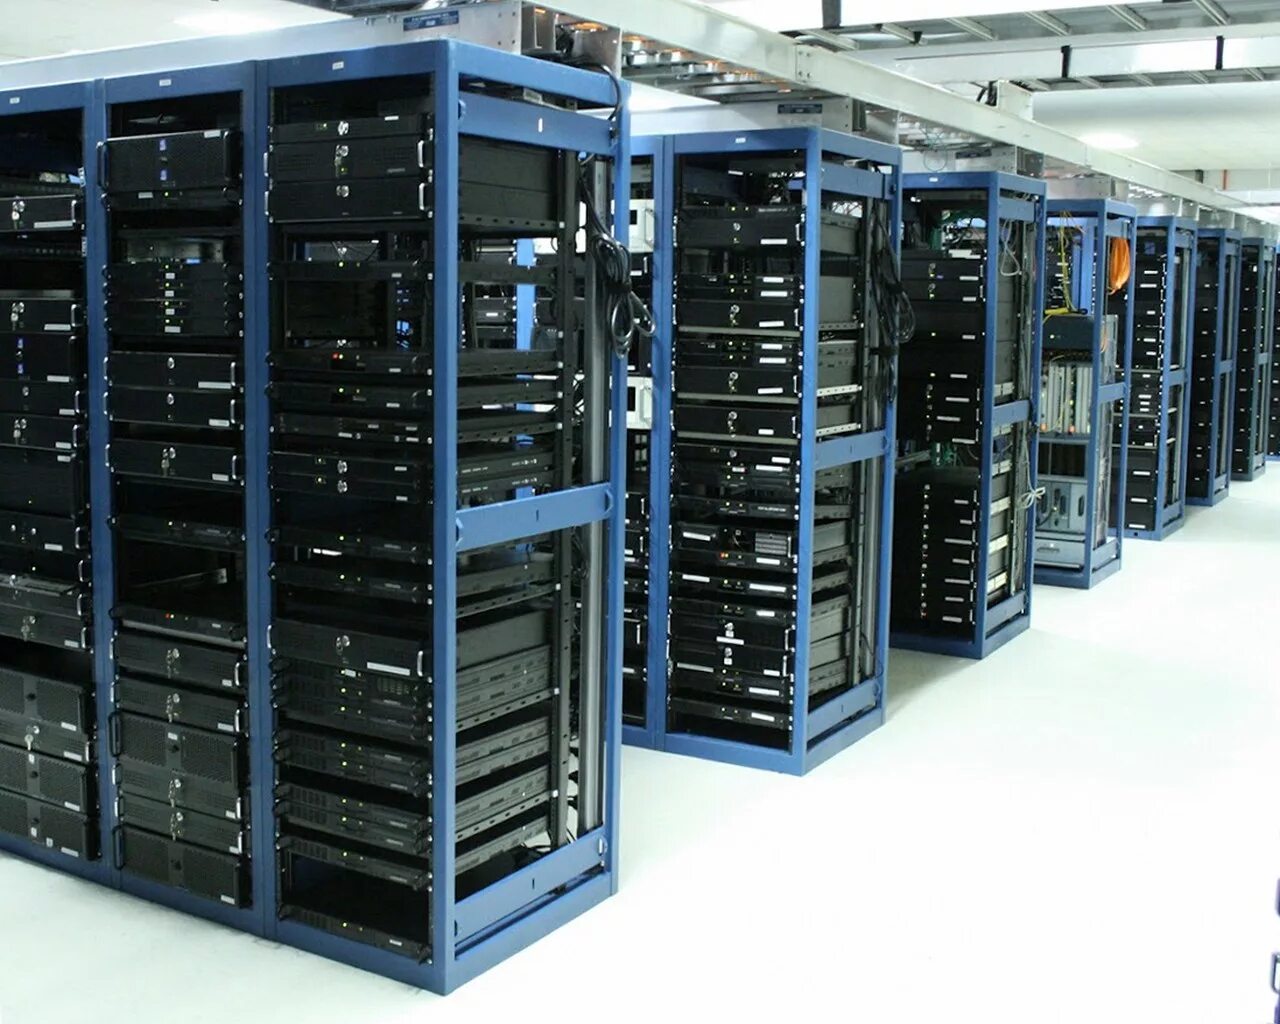 ВДС сервер. Серверная машина. Серверная комната. Компьютерное и серверное оборудование.